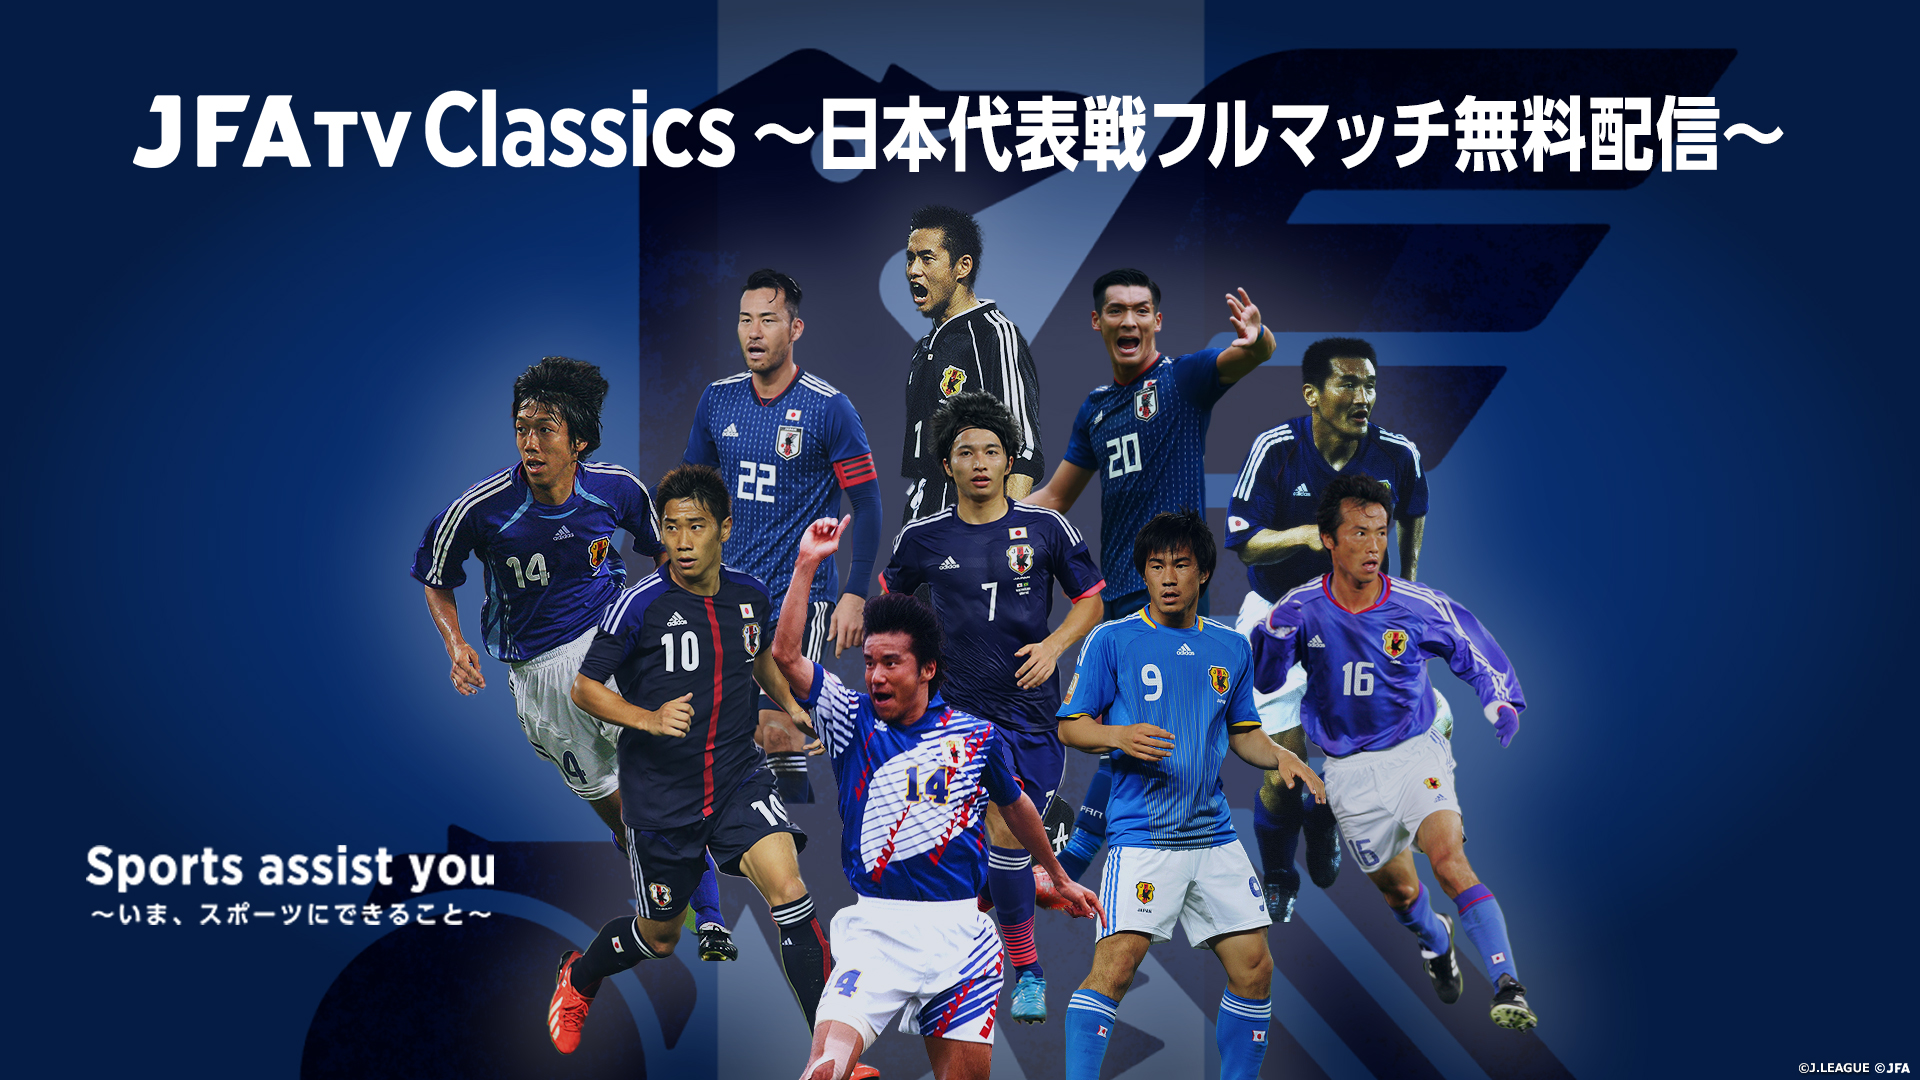 Jfatv Classics 日本代表戦フルマッチ無料配信 Sports Assist You いま スポーツにできること Jfa 公益財団法人 日本サッカー協会